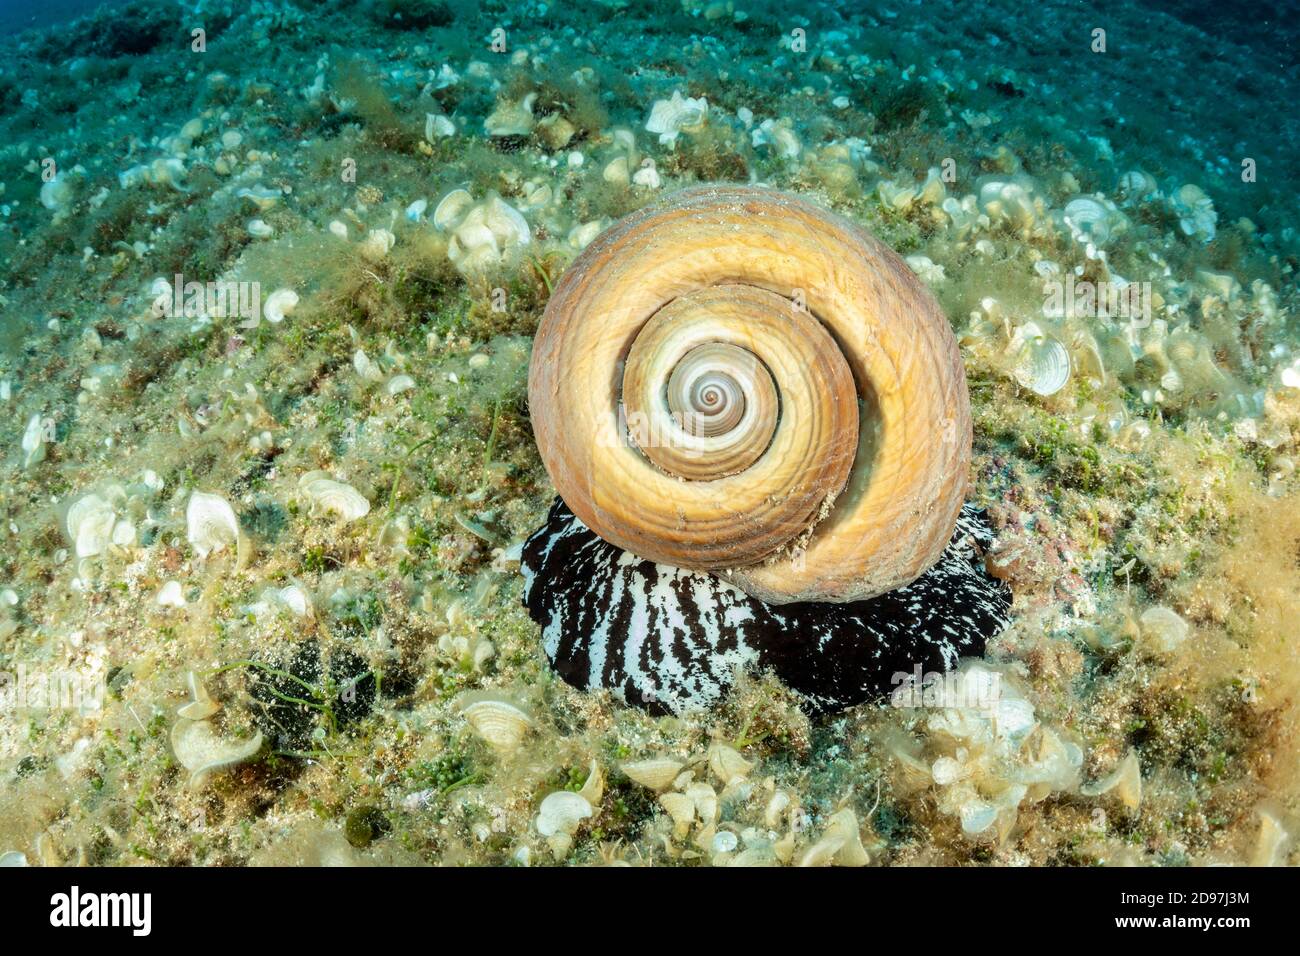 Riesenmuschel (Tonna galea) ist eine Art von Meeresschnecke, eine der größten Schnecken im Mittelmeer, Insel Vis, Kroatien, Adria Stockfoto